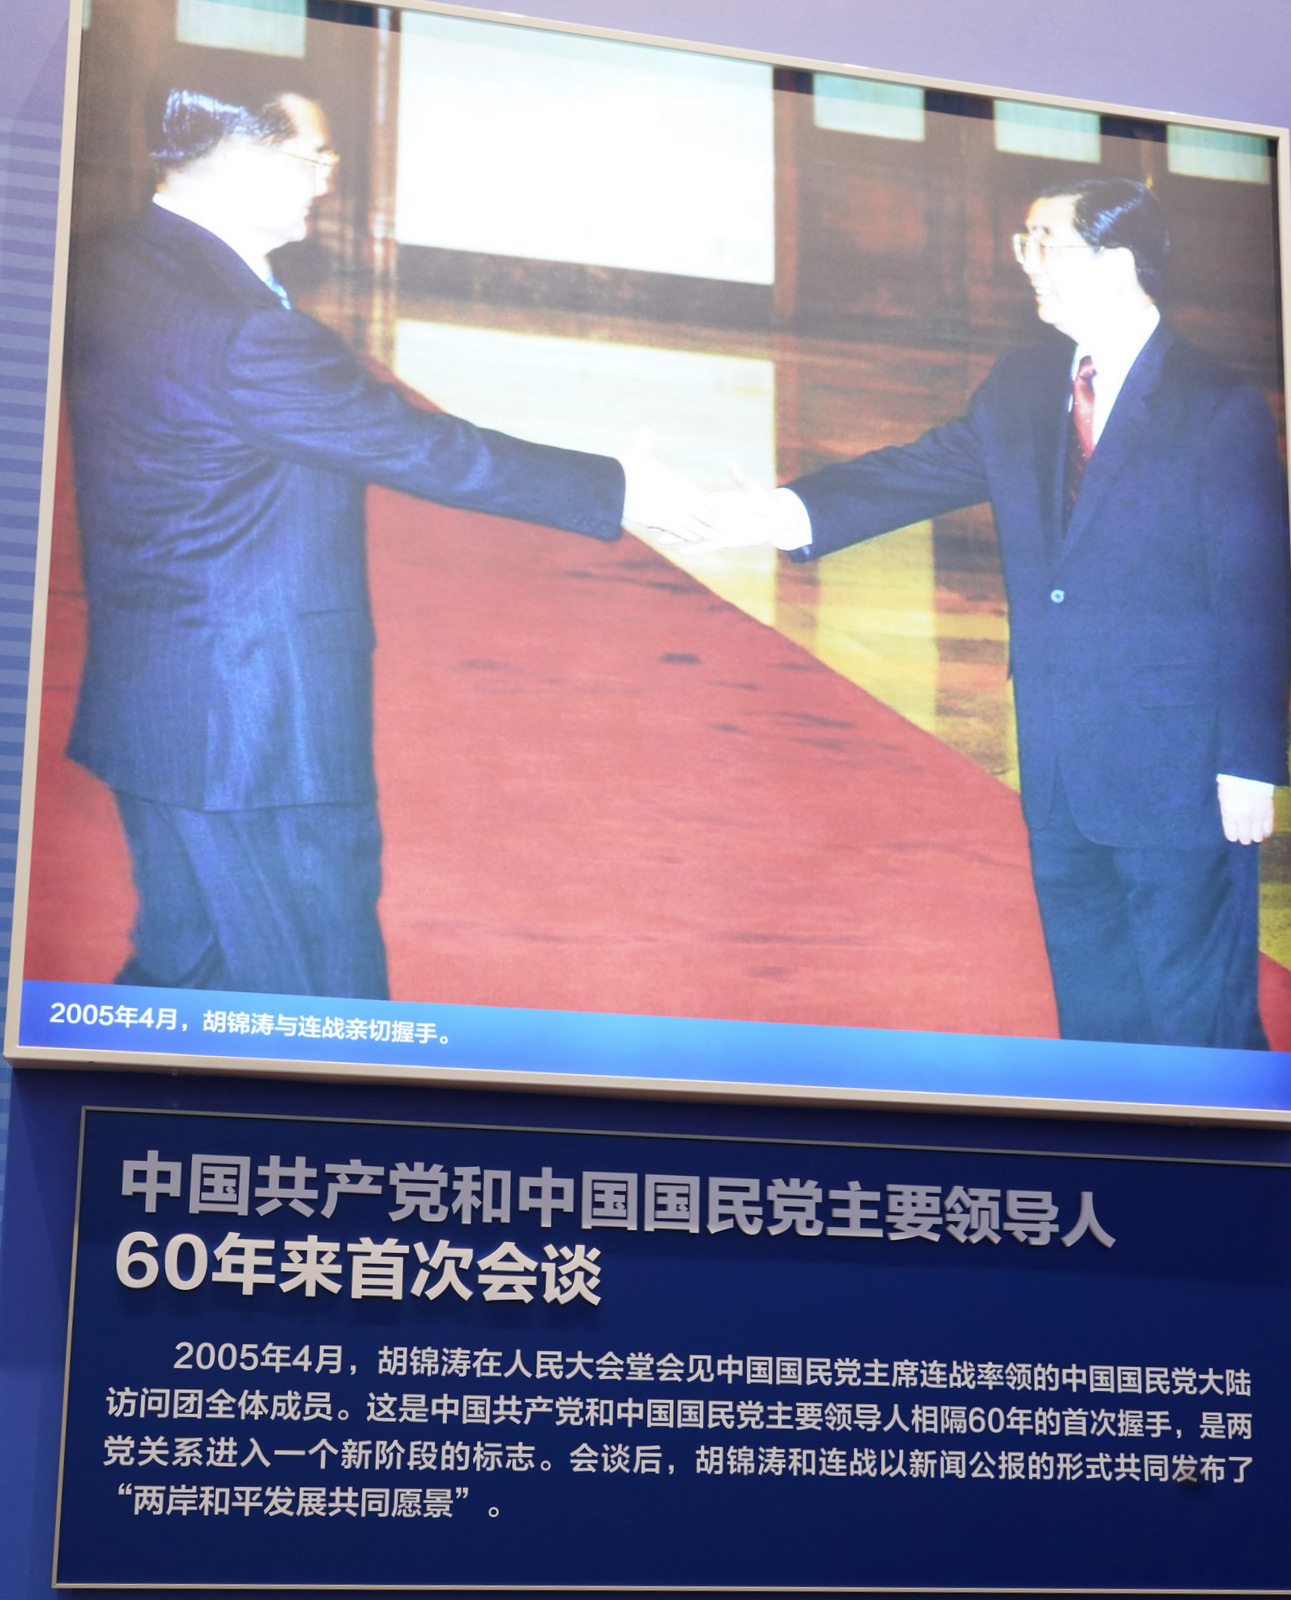 中國共產黨和中國國民黨主要領導人60年來首次會談。